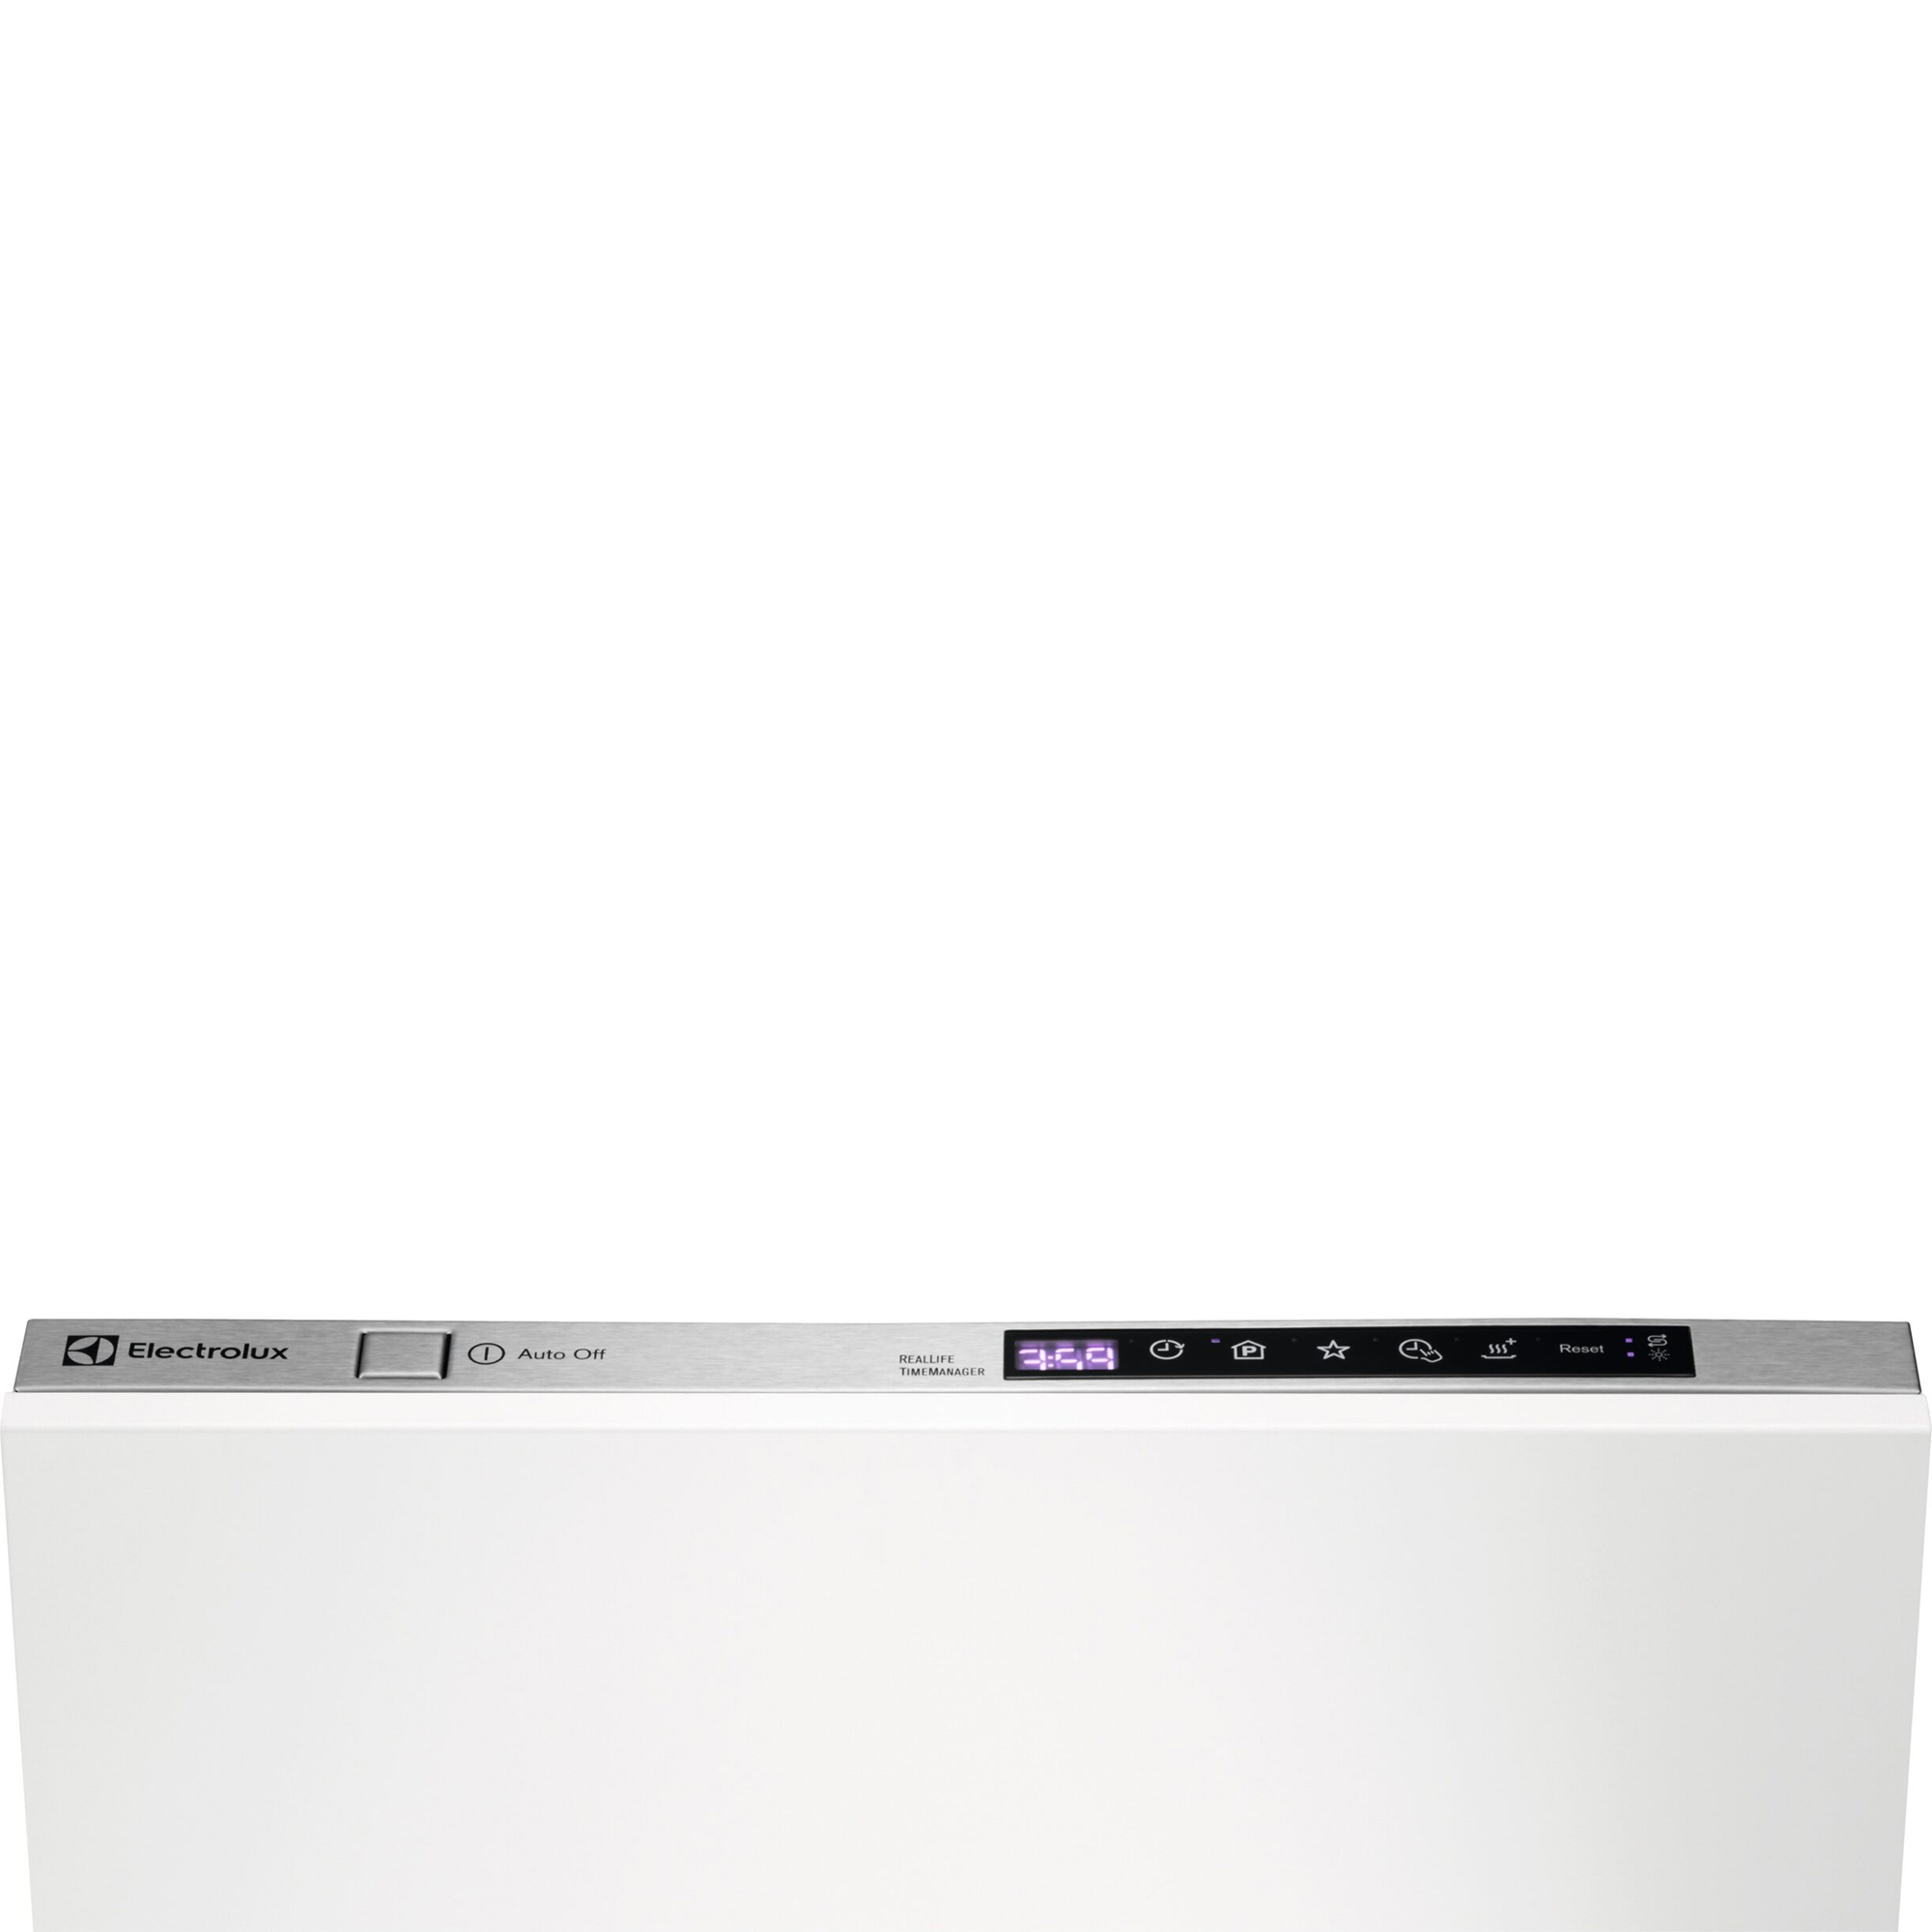 Встраиваемая посудомоечная машина Electrolux Slimline ESL94655RO, цвет белый - фото 5